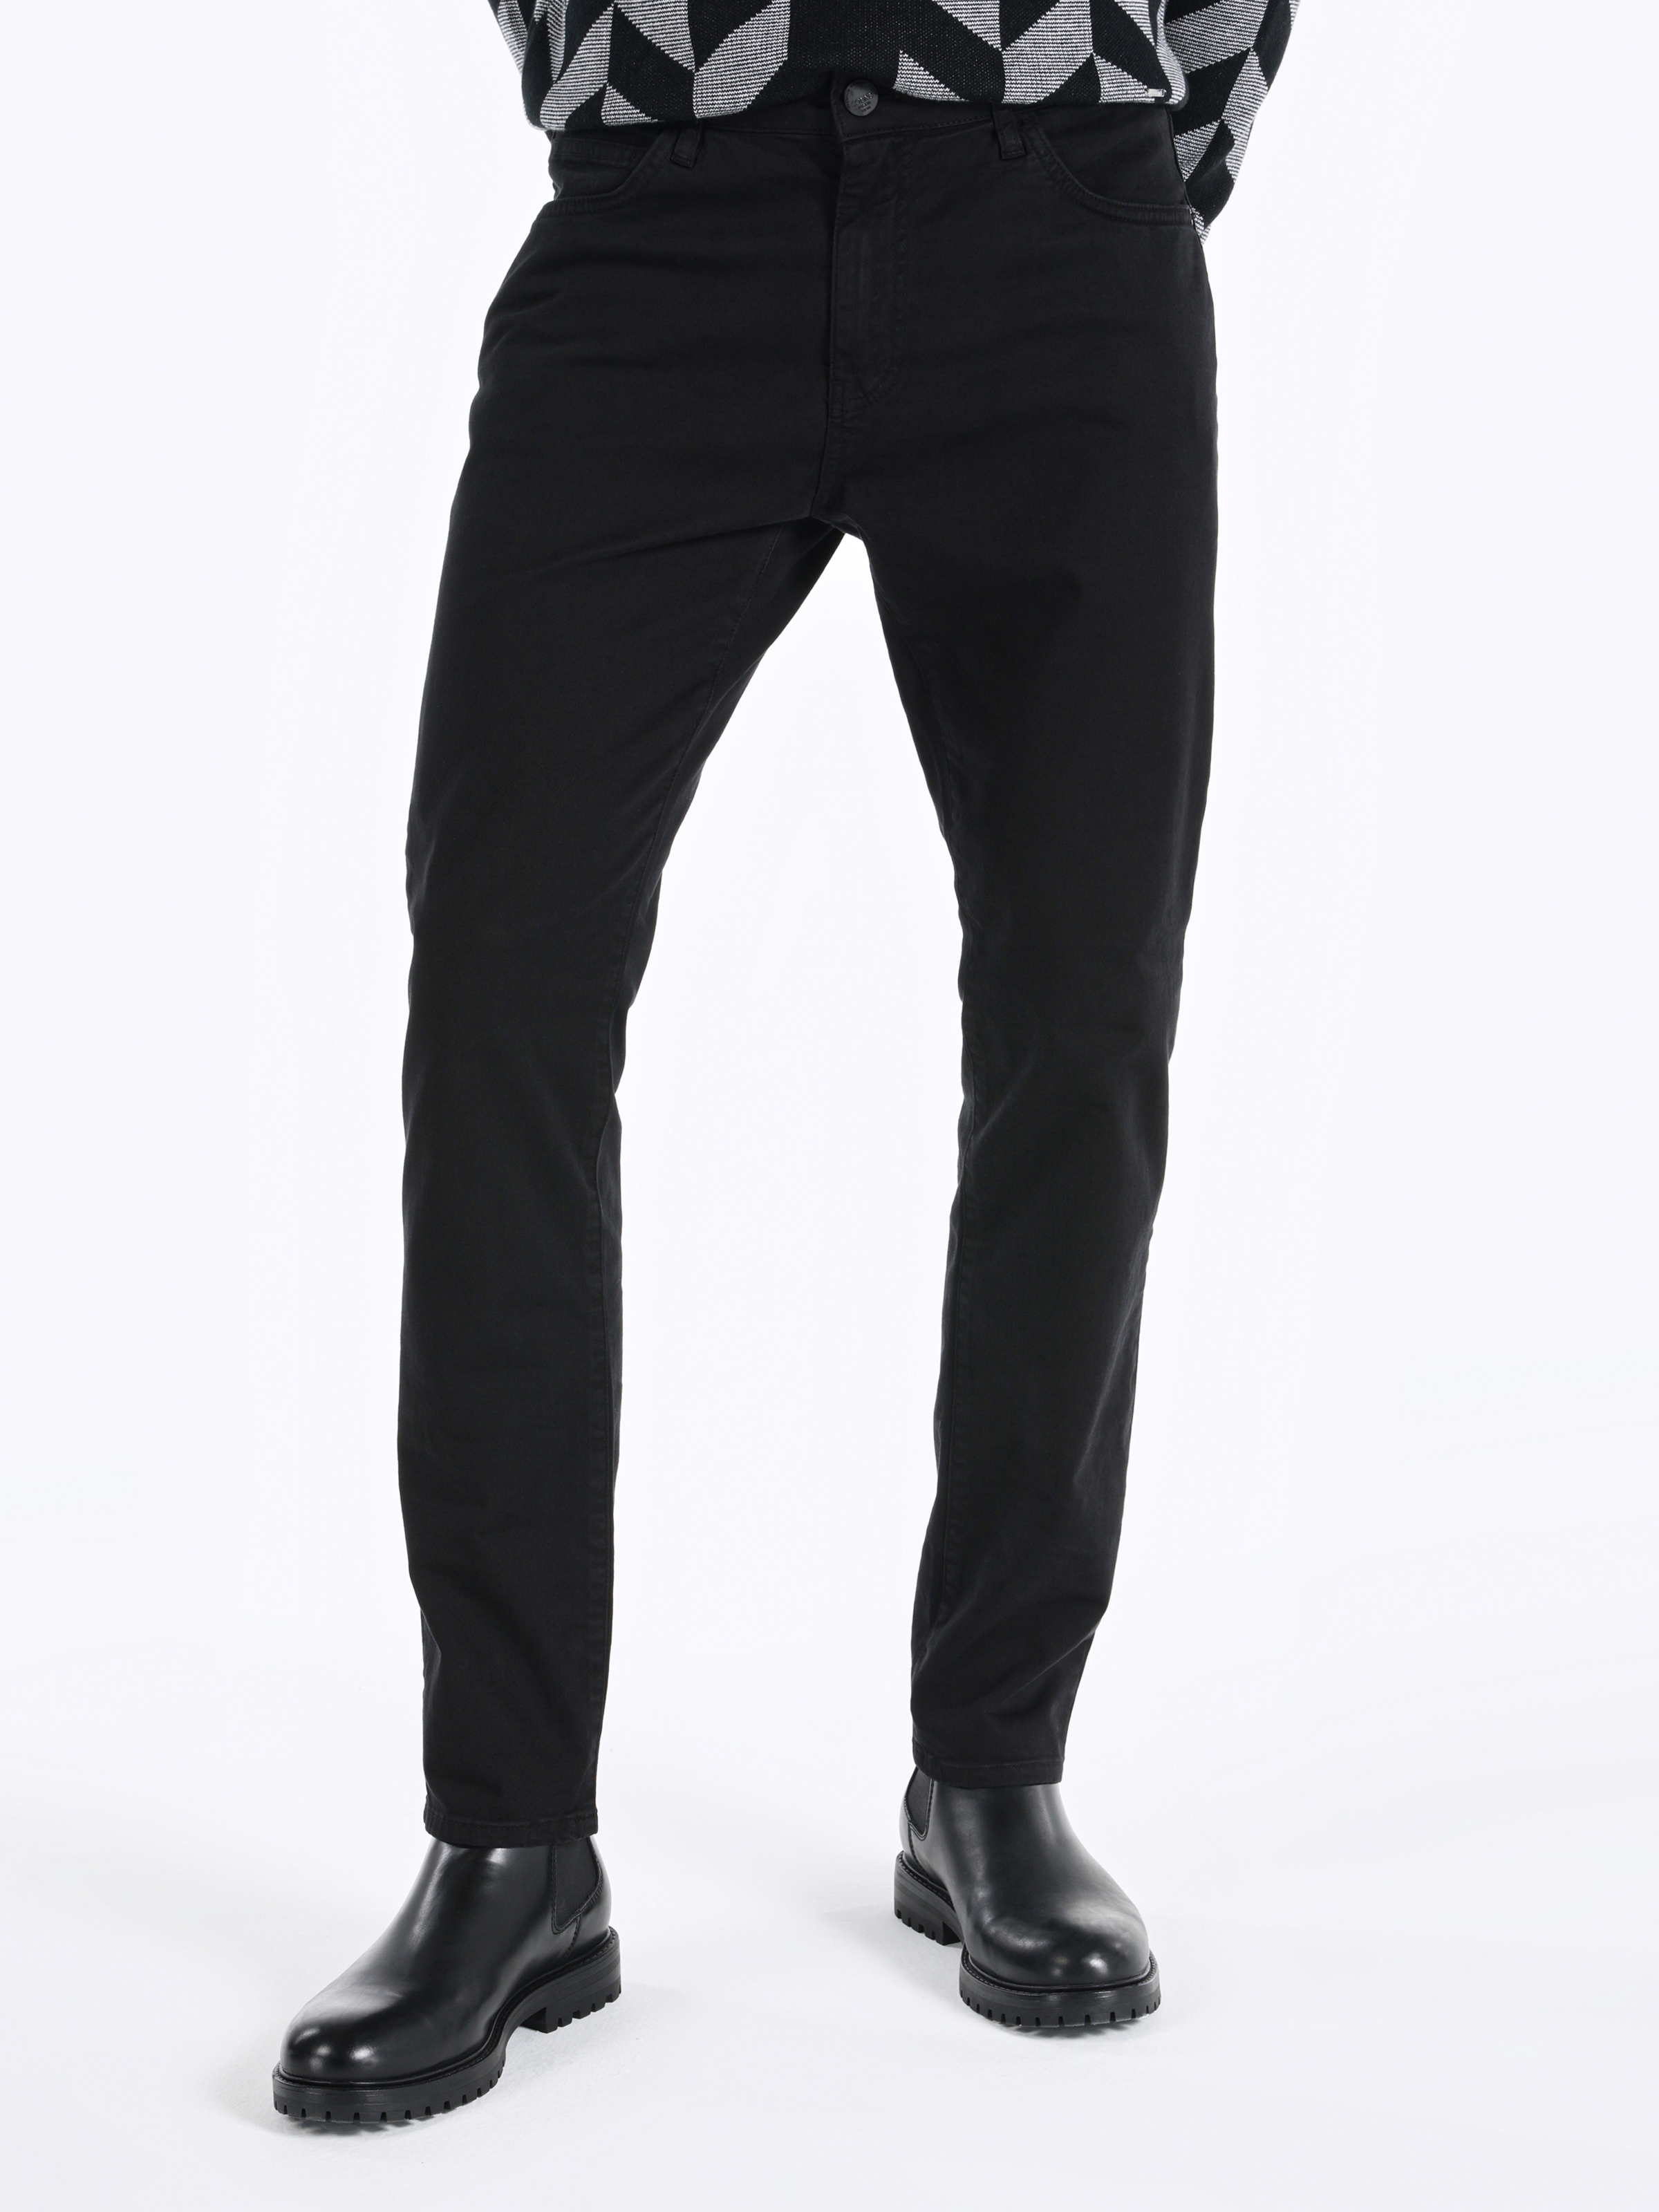 Afficher les détails de Pantalon Homme Noir Taille Basse Coupe Normale Jambe Droite